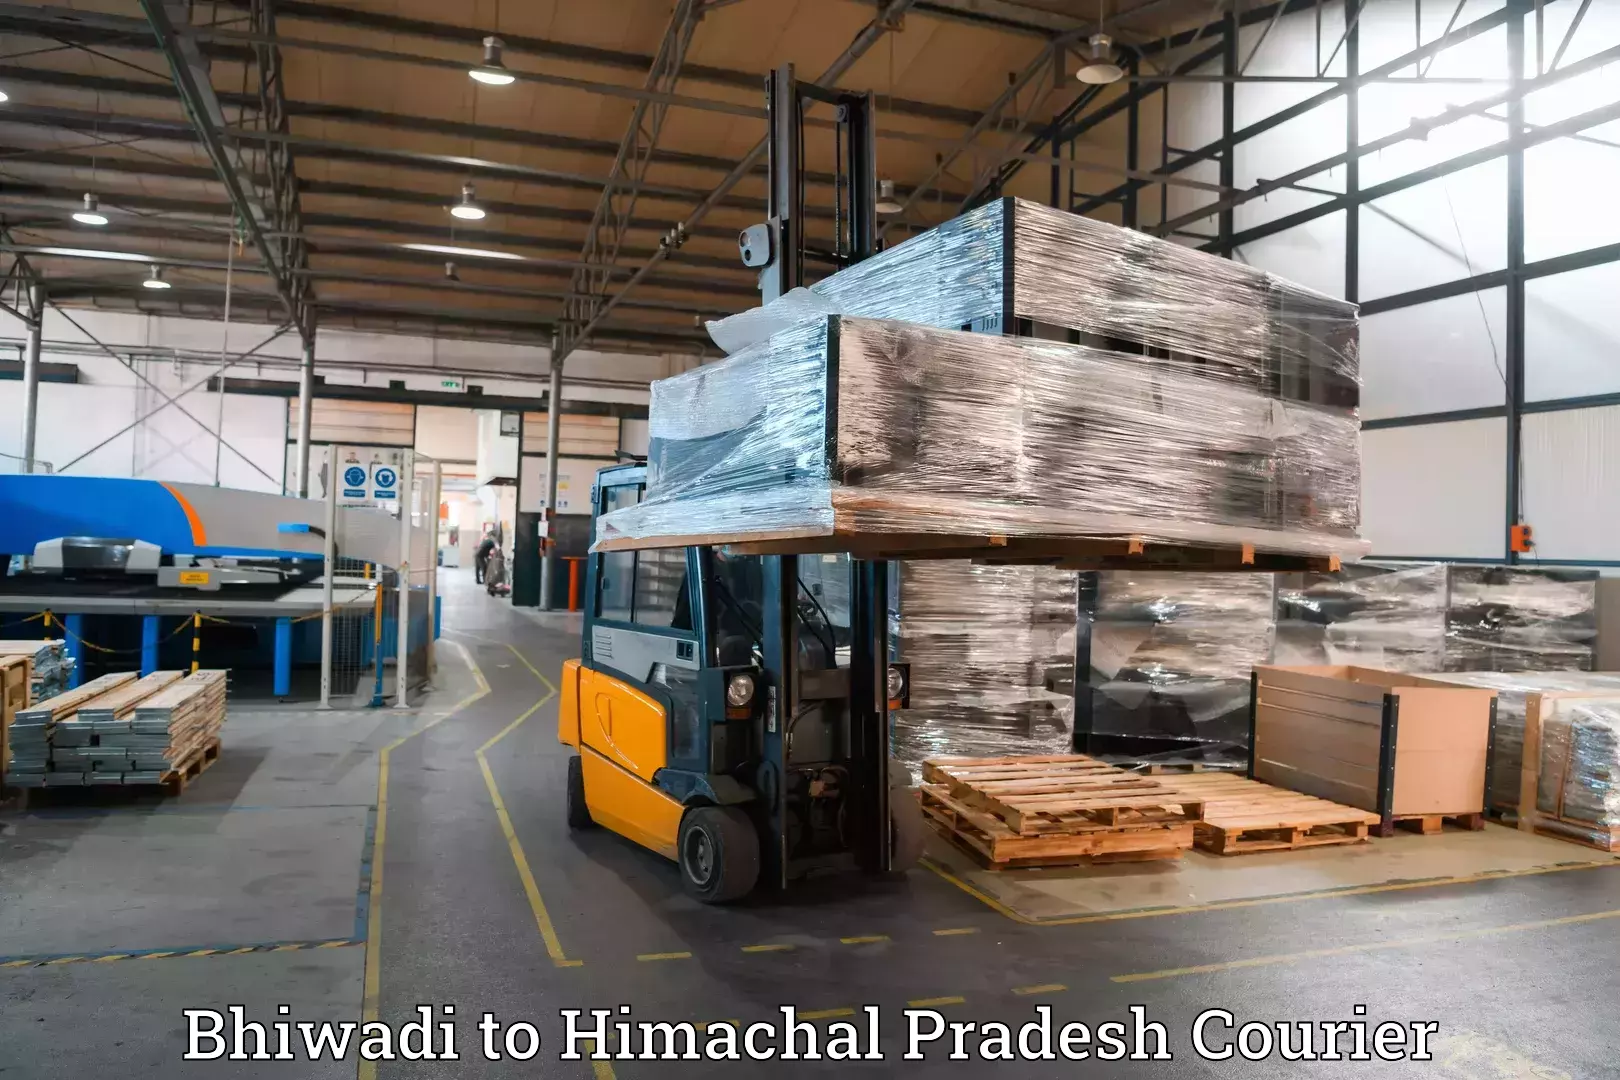 Baggage transport technology Bhiwadi to Himachal Pradesh